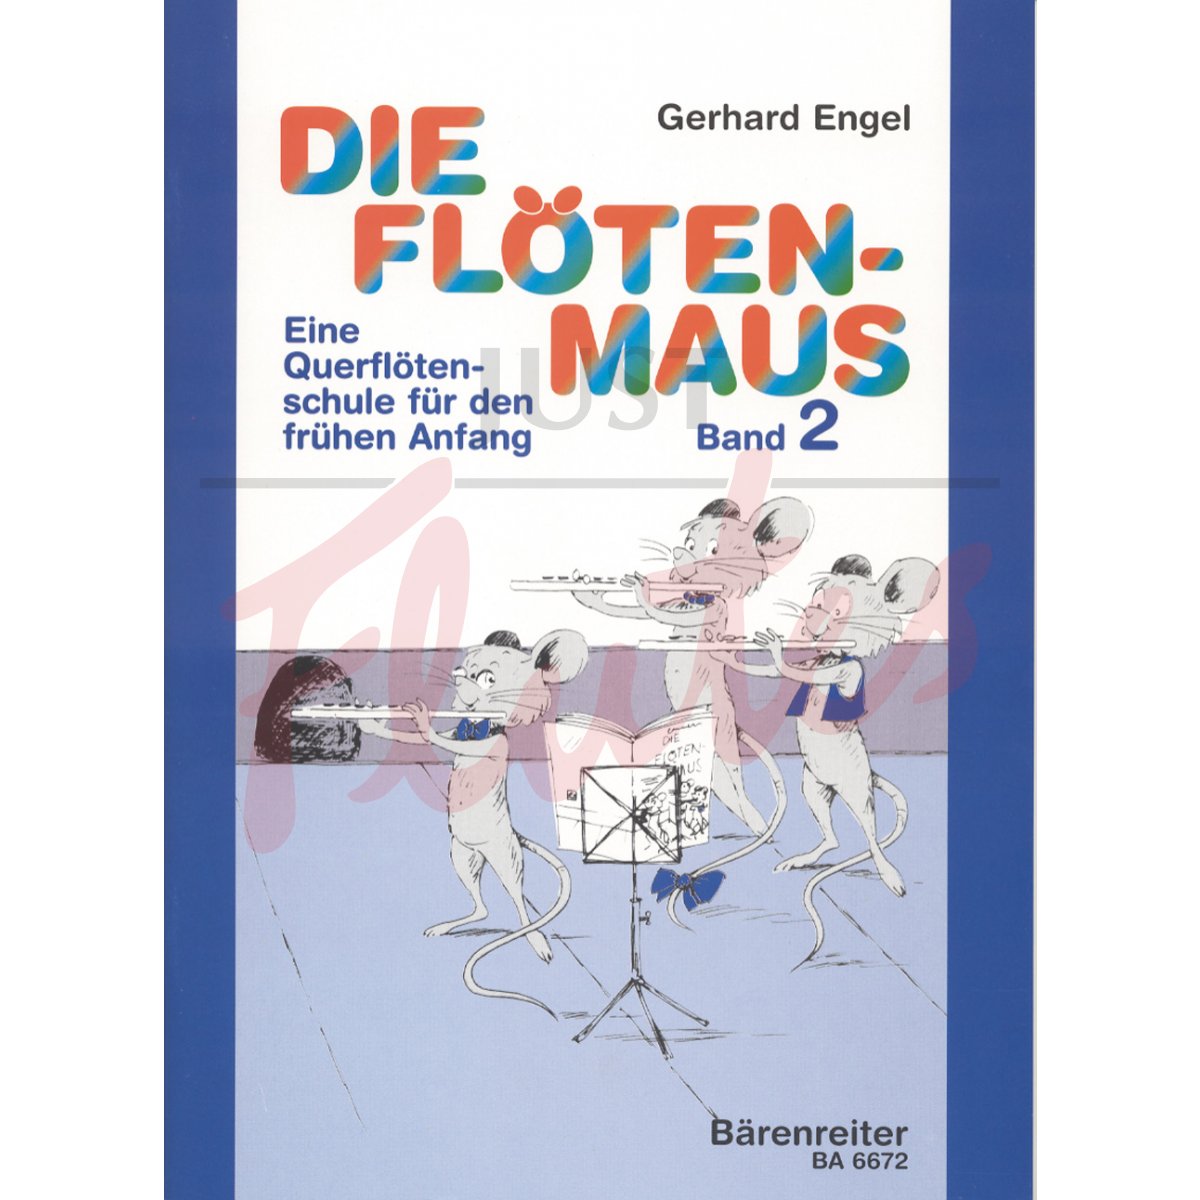 Die Floeten-Maus, Volume 2: Transverse Flute Lessons for the Beginner